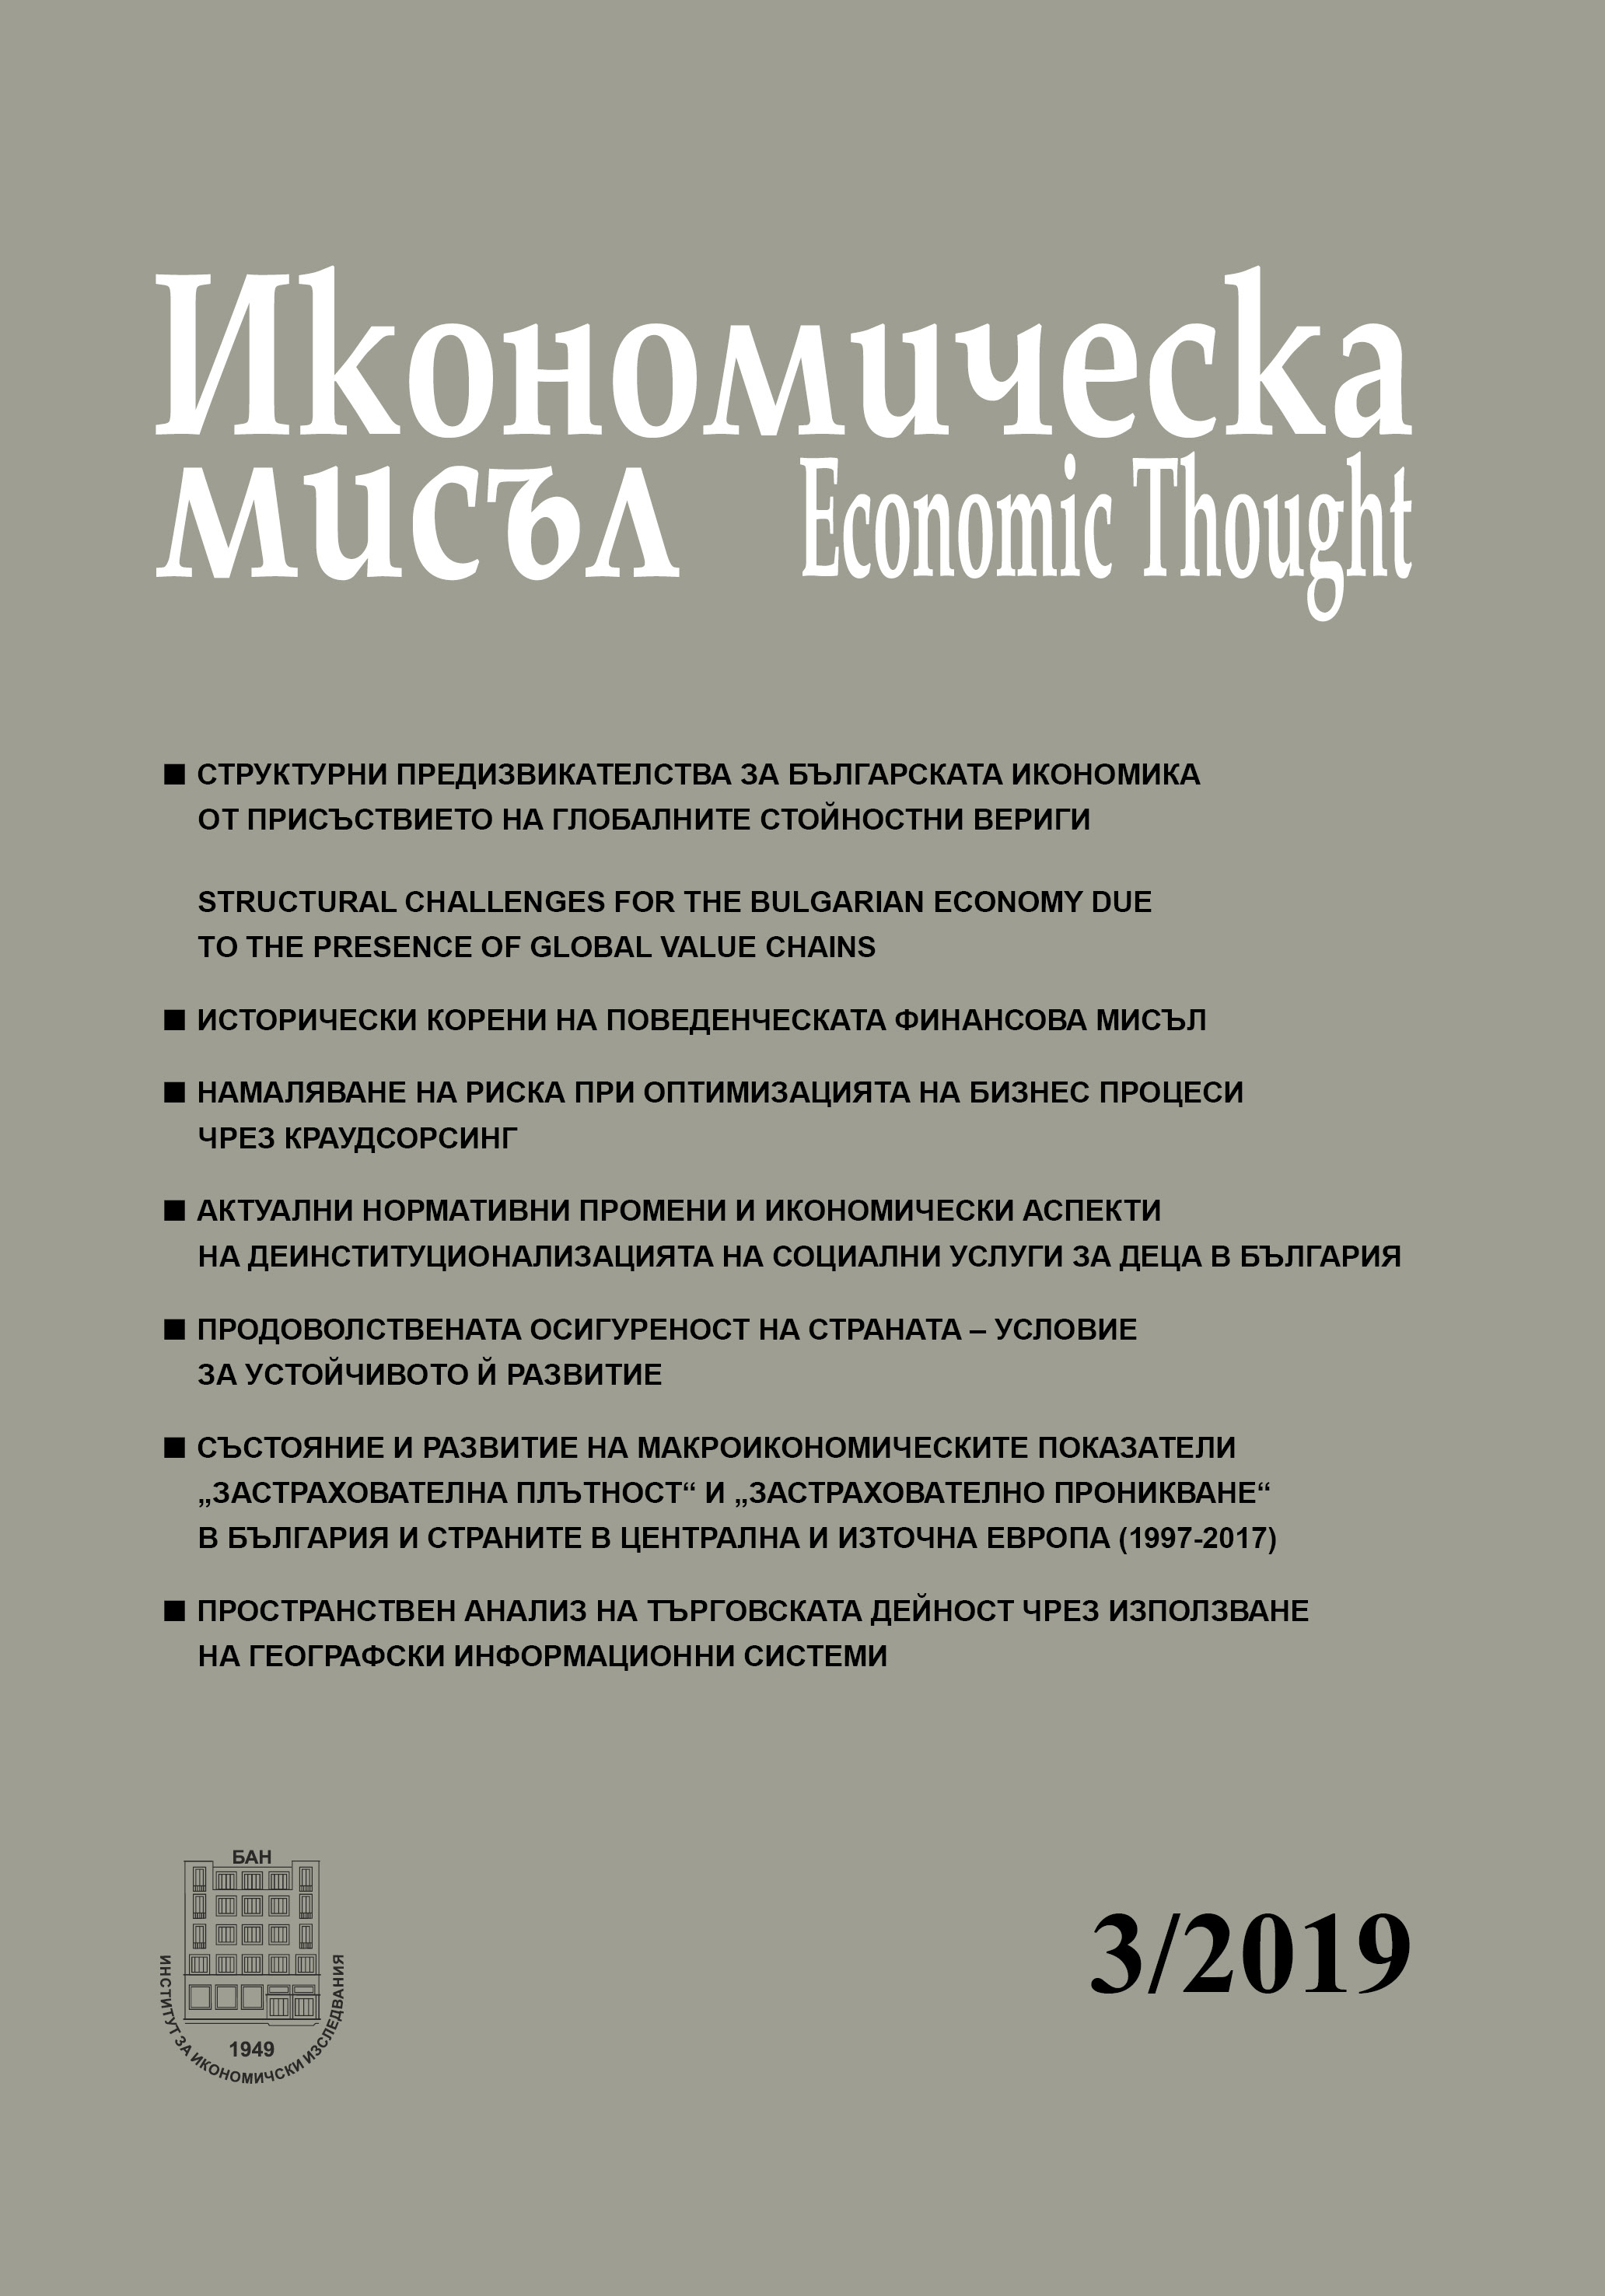 Състояние и развитие на макроикономическите показатели „застрахователна плътност“ и „застрахователно проникване“ в България и страните в Централна и Източна Европа (1997-2017)